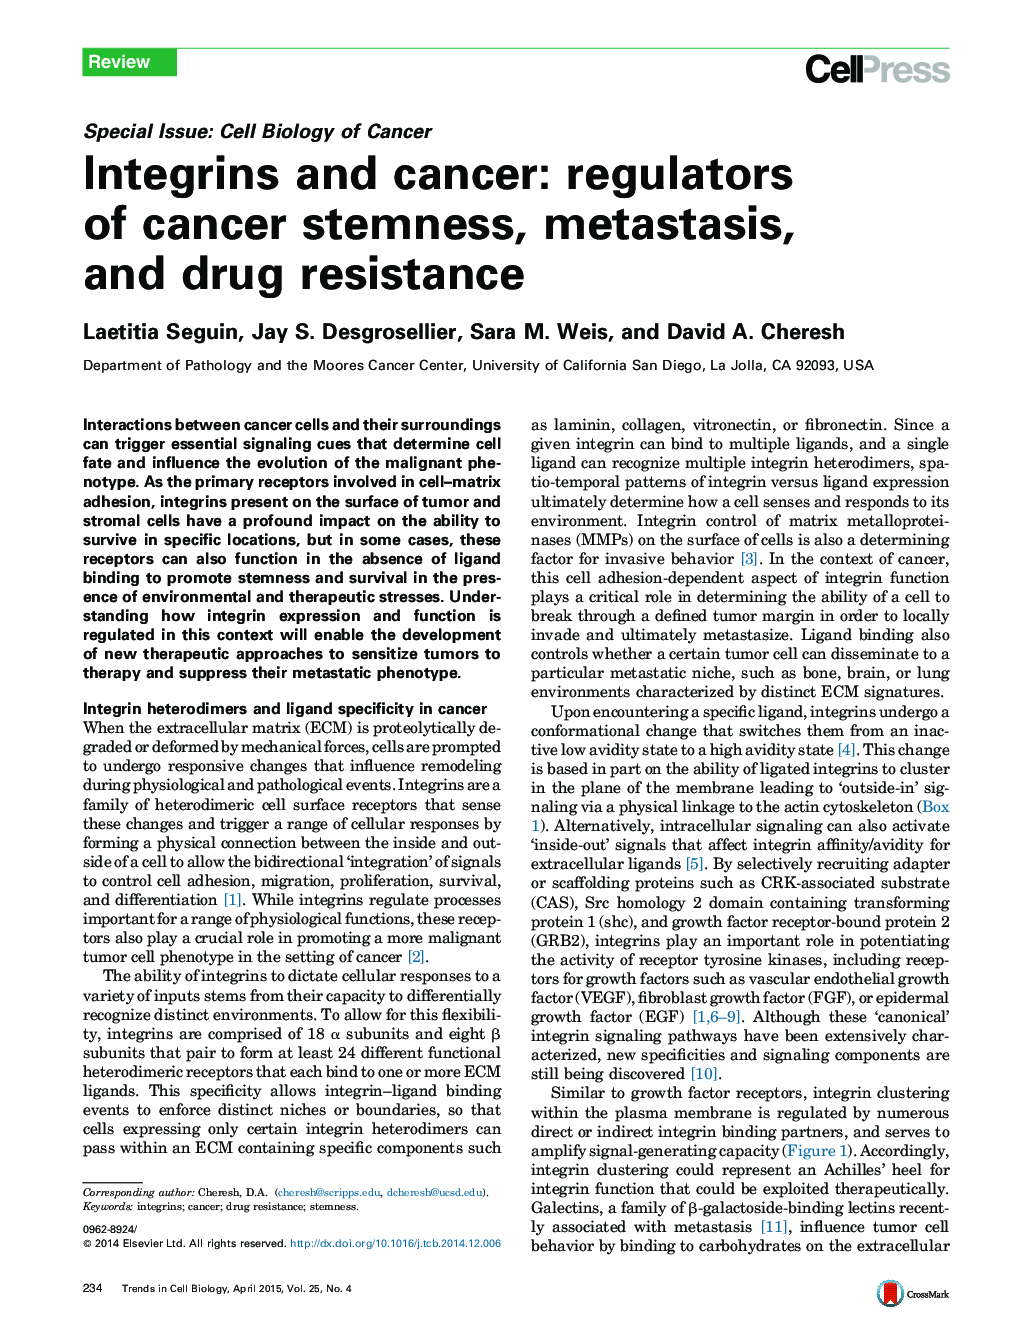 Integrins and cancer: regulators of cancer stemness, metastasis, and drug resistance